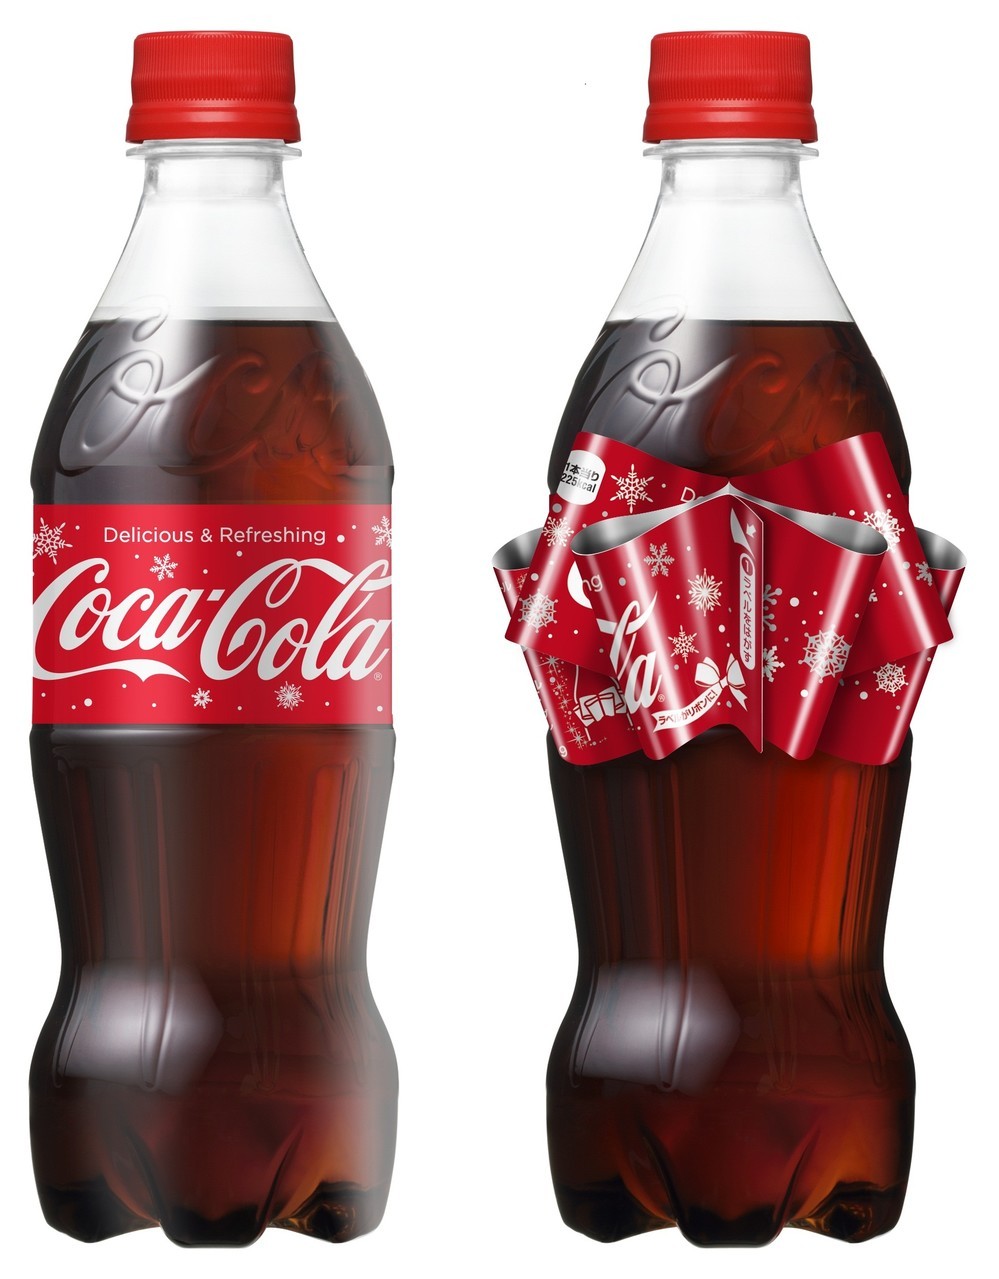 「コカ・コーラ」リボンボトル
